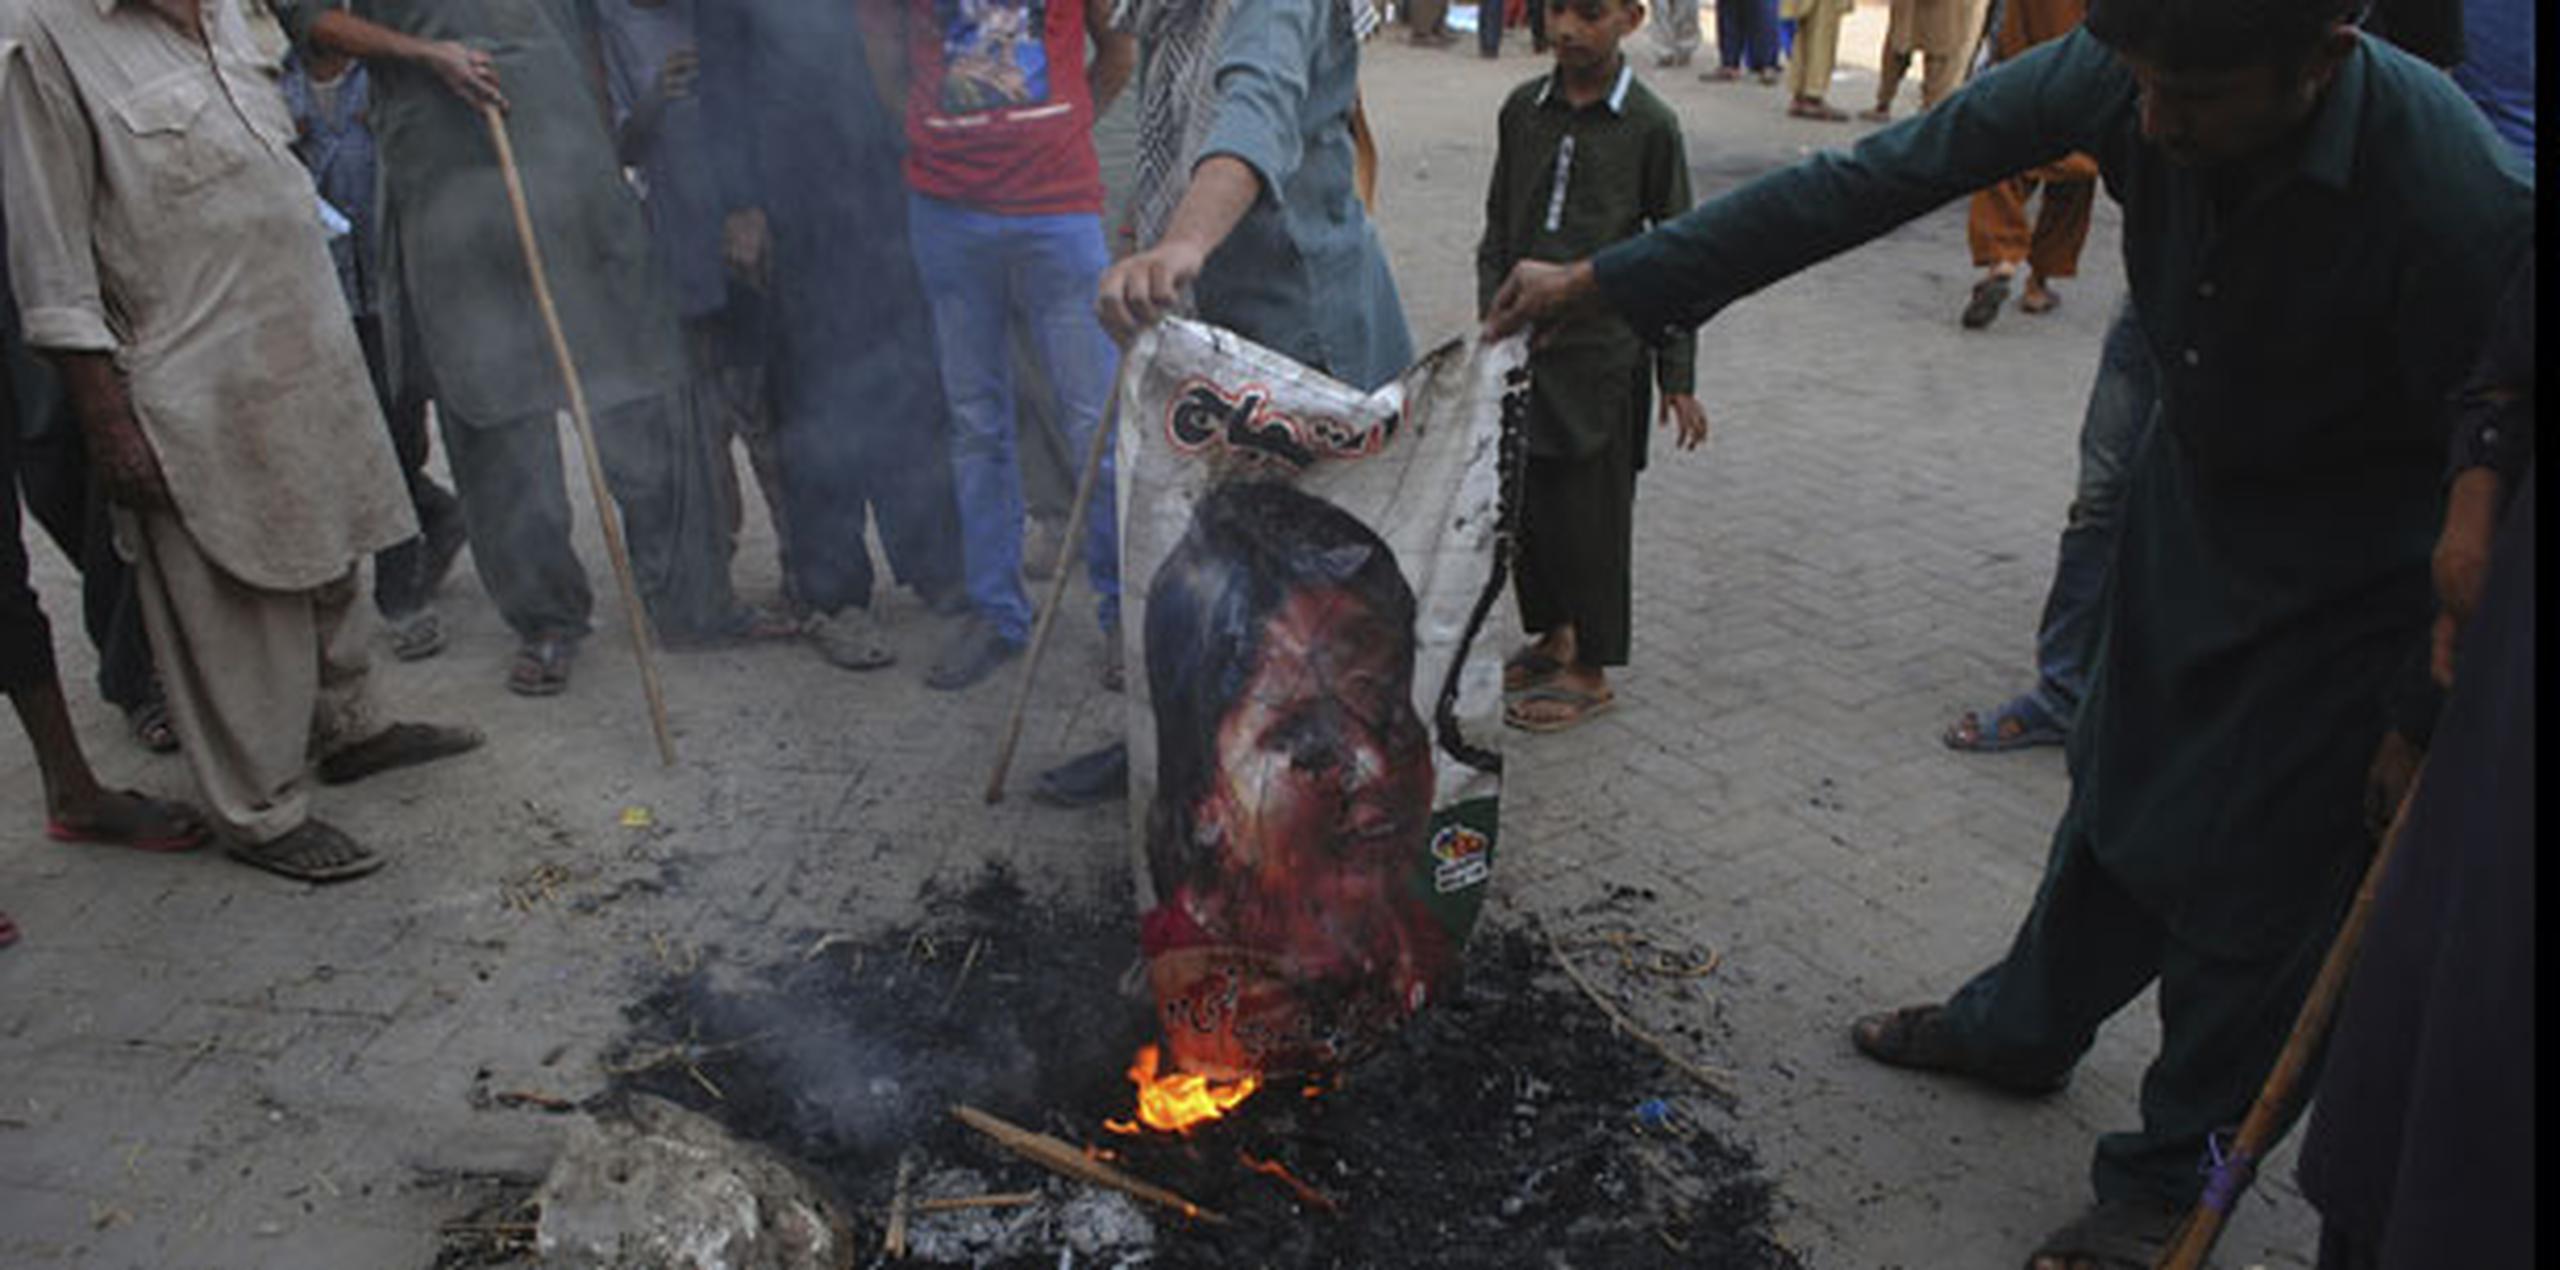 El máximo tribunal paquistaní absolvió el miércoles a Asia Bibi, lo cual indignó a los islamistas de línea dura. (AP)